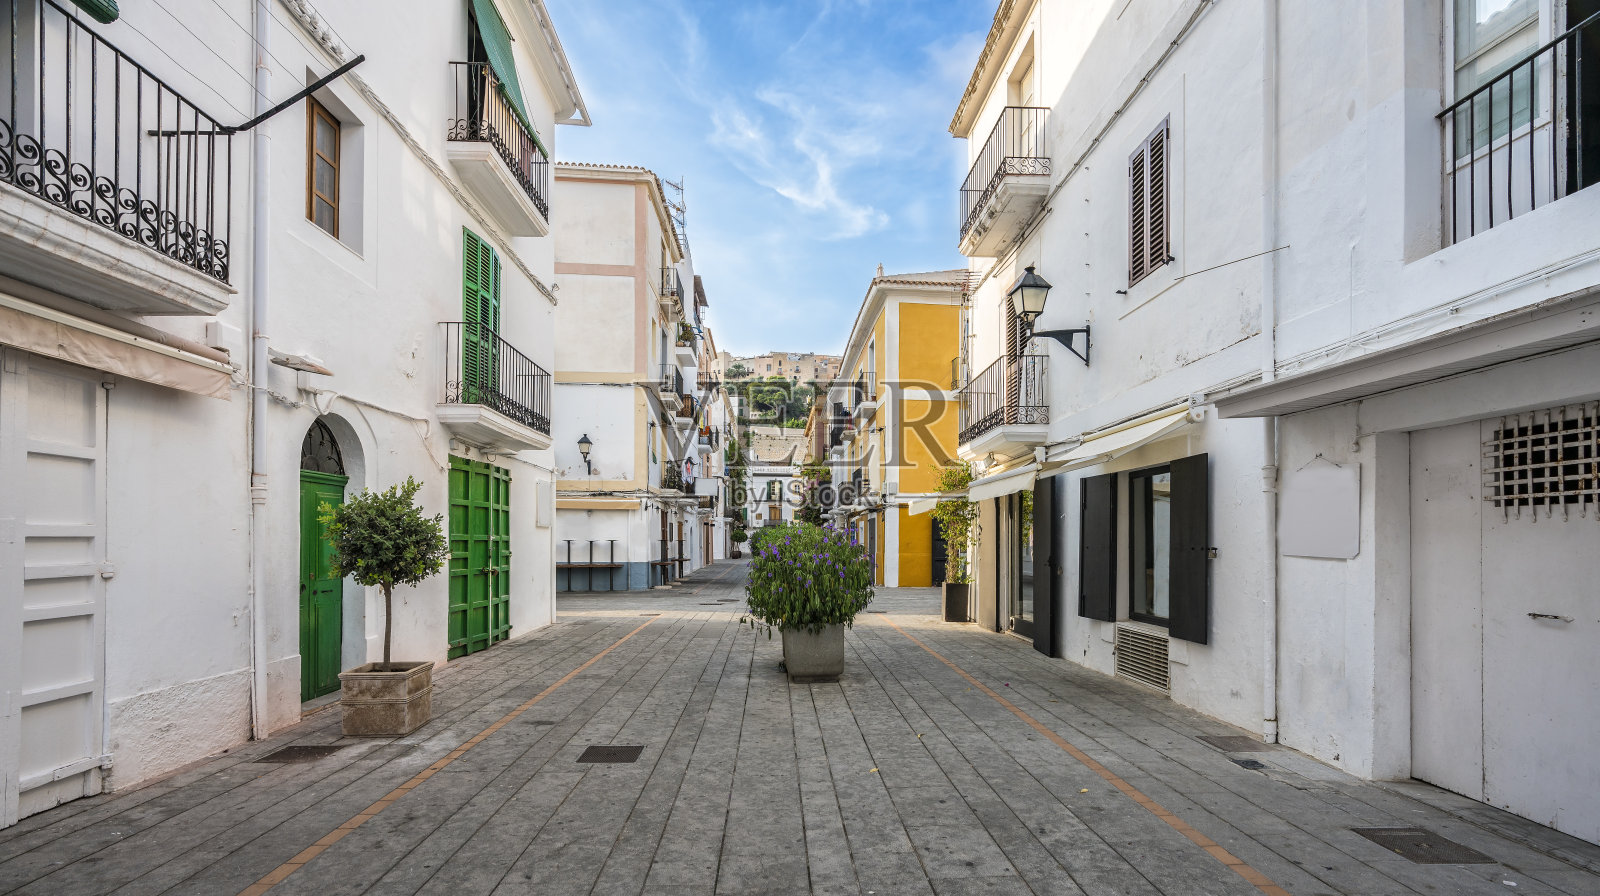 西班牙巴利阿里群岛伊比沙古城的典型街道照片摄影图片